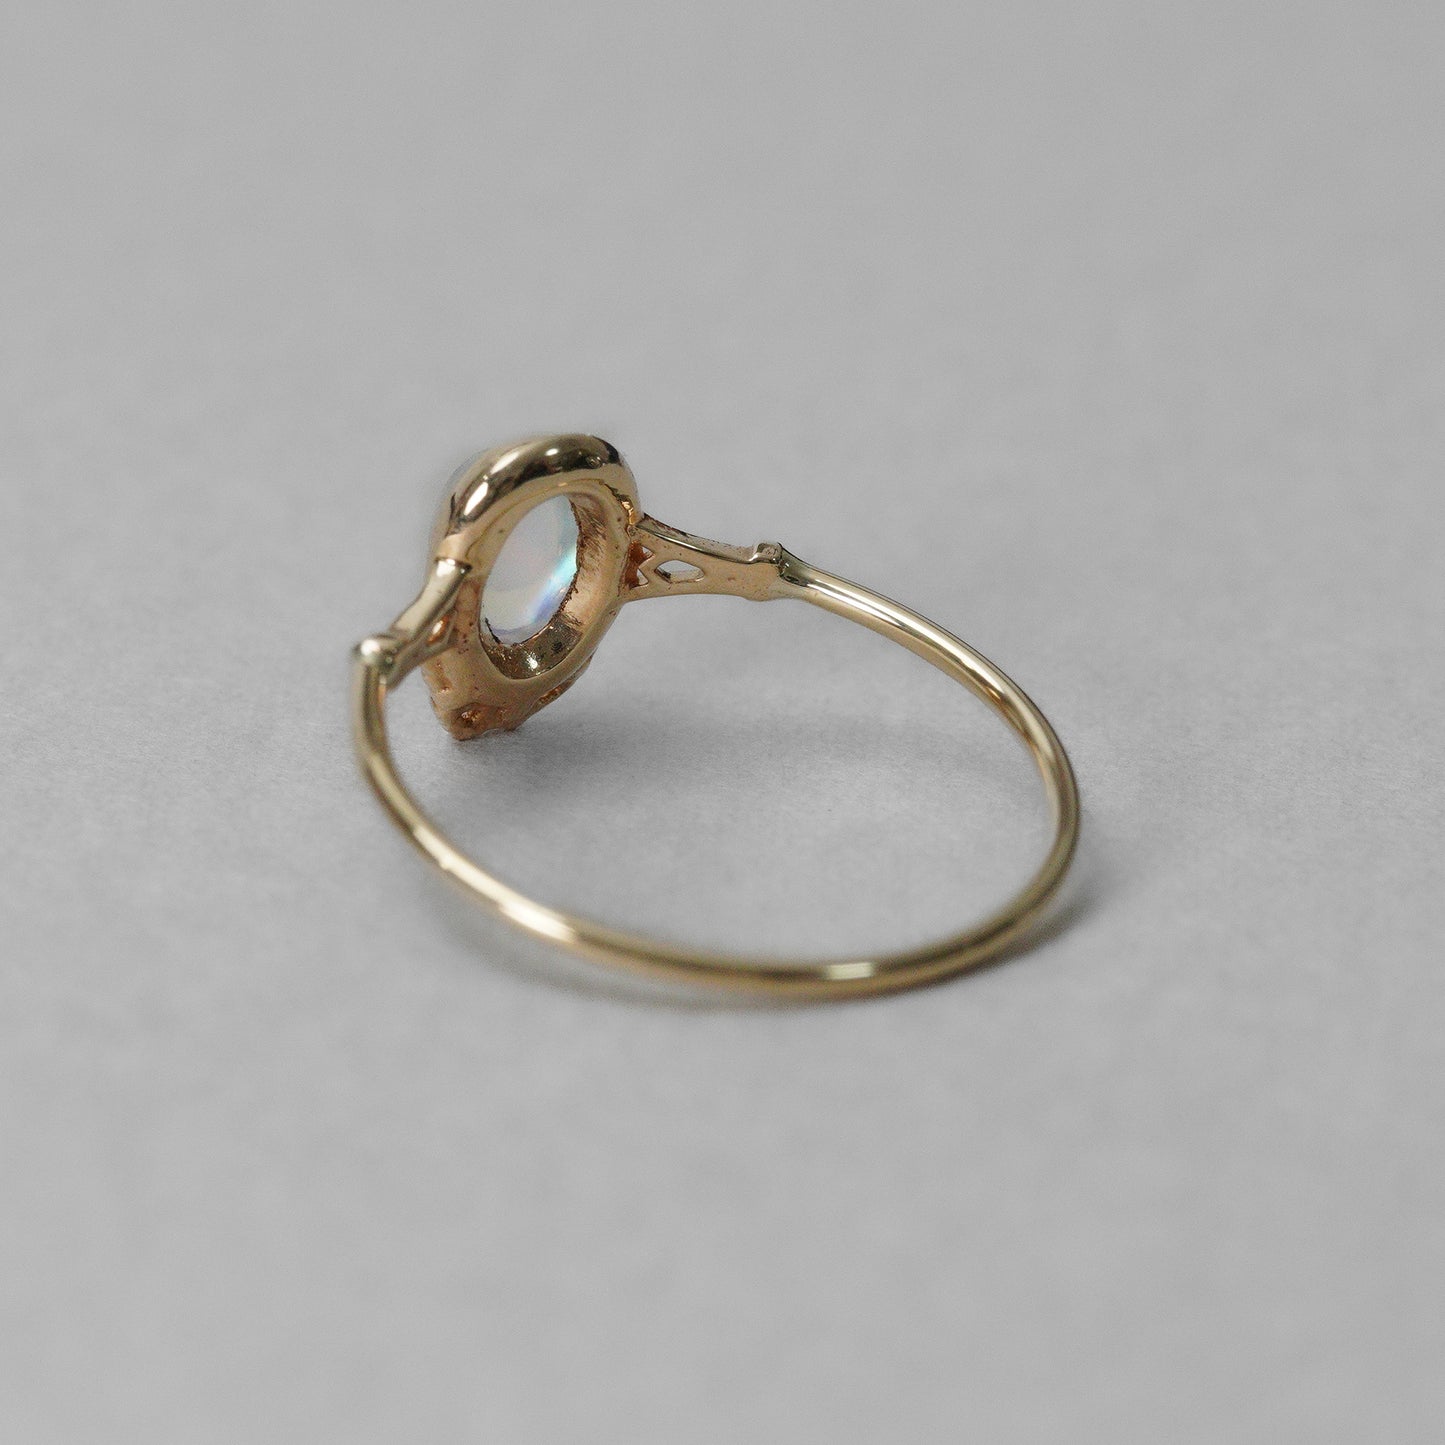 1559 Andesine Labradorite  / Ring